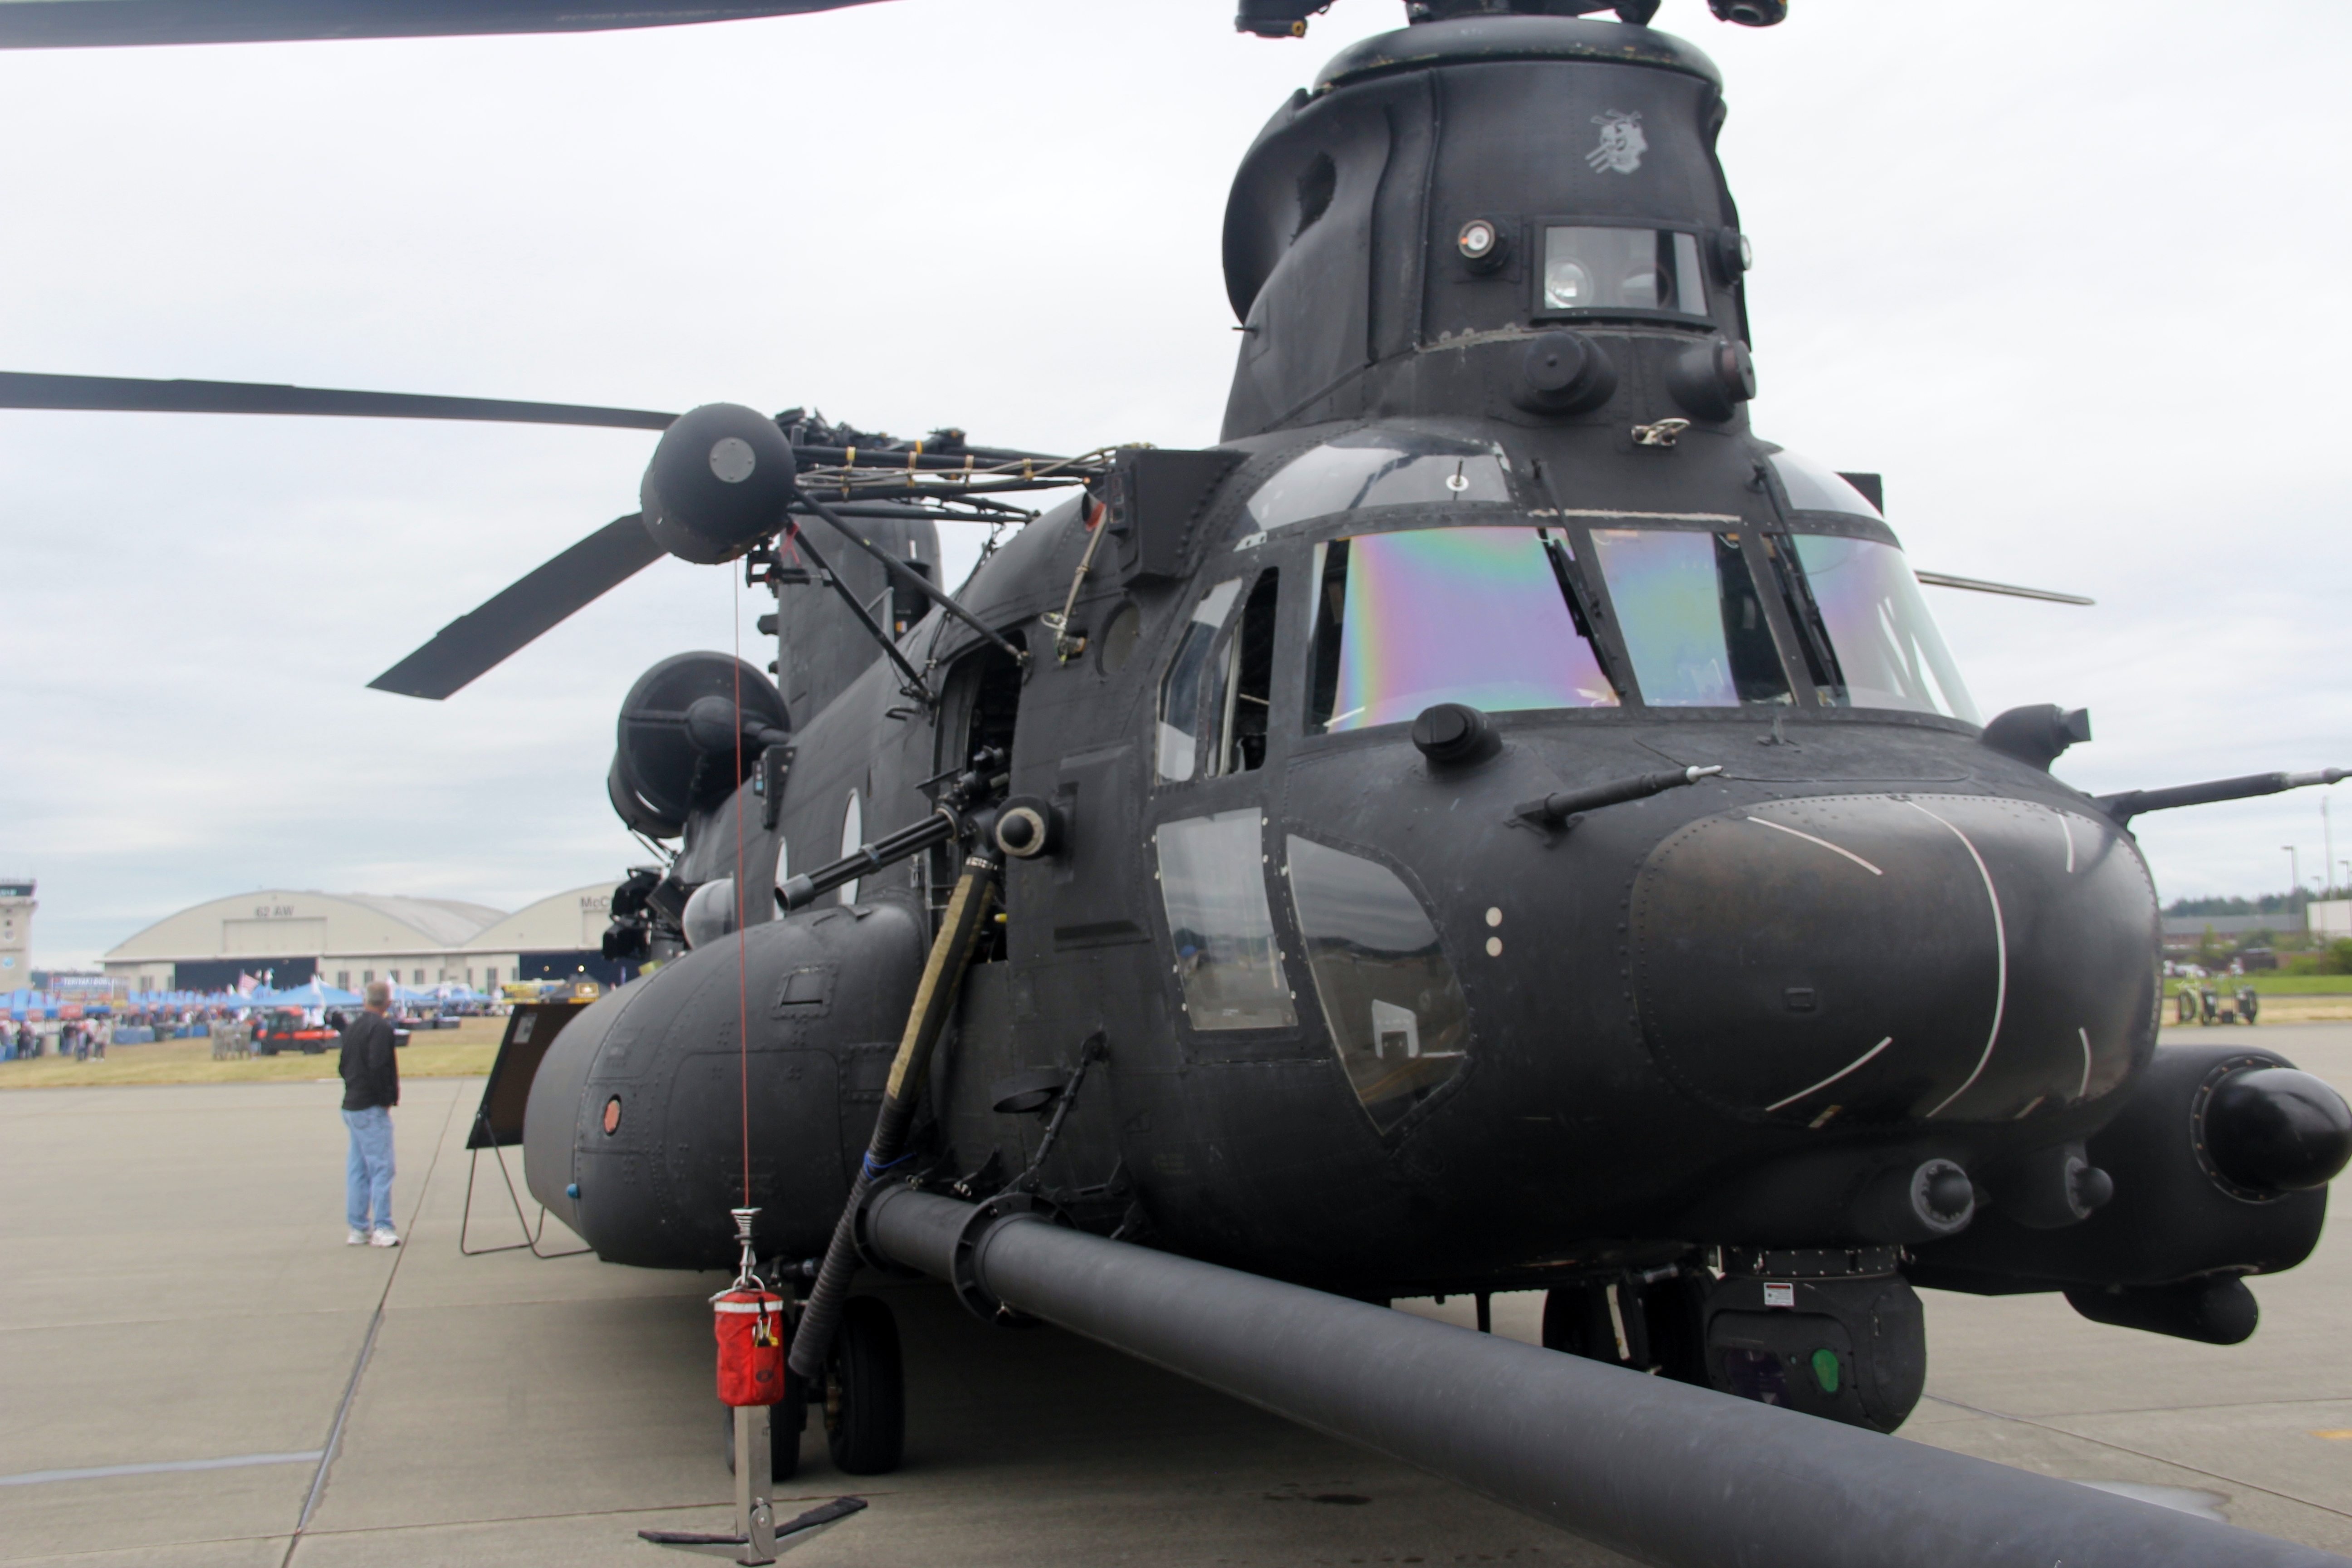 双发动机,双旋翼的中型运输直升机,得名于美洲原住民支努干族